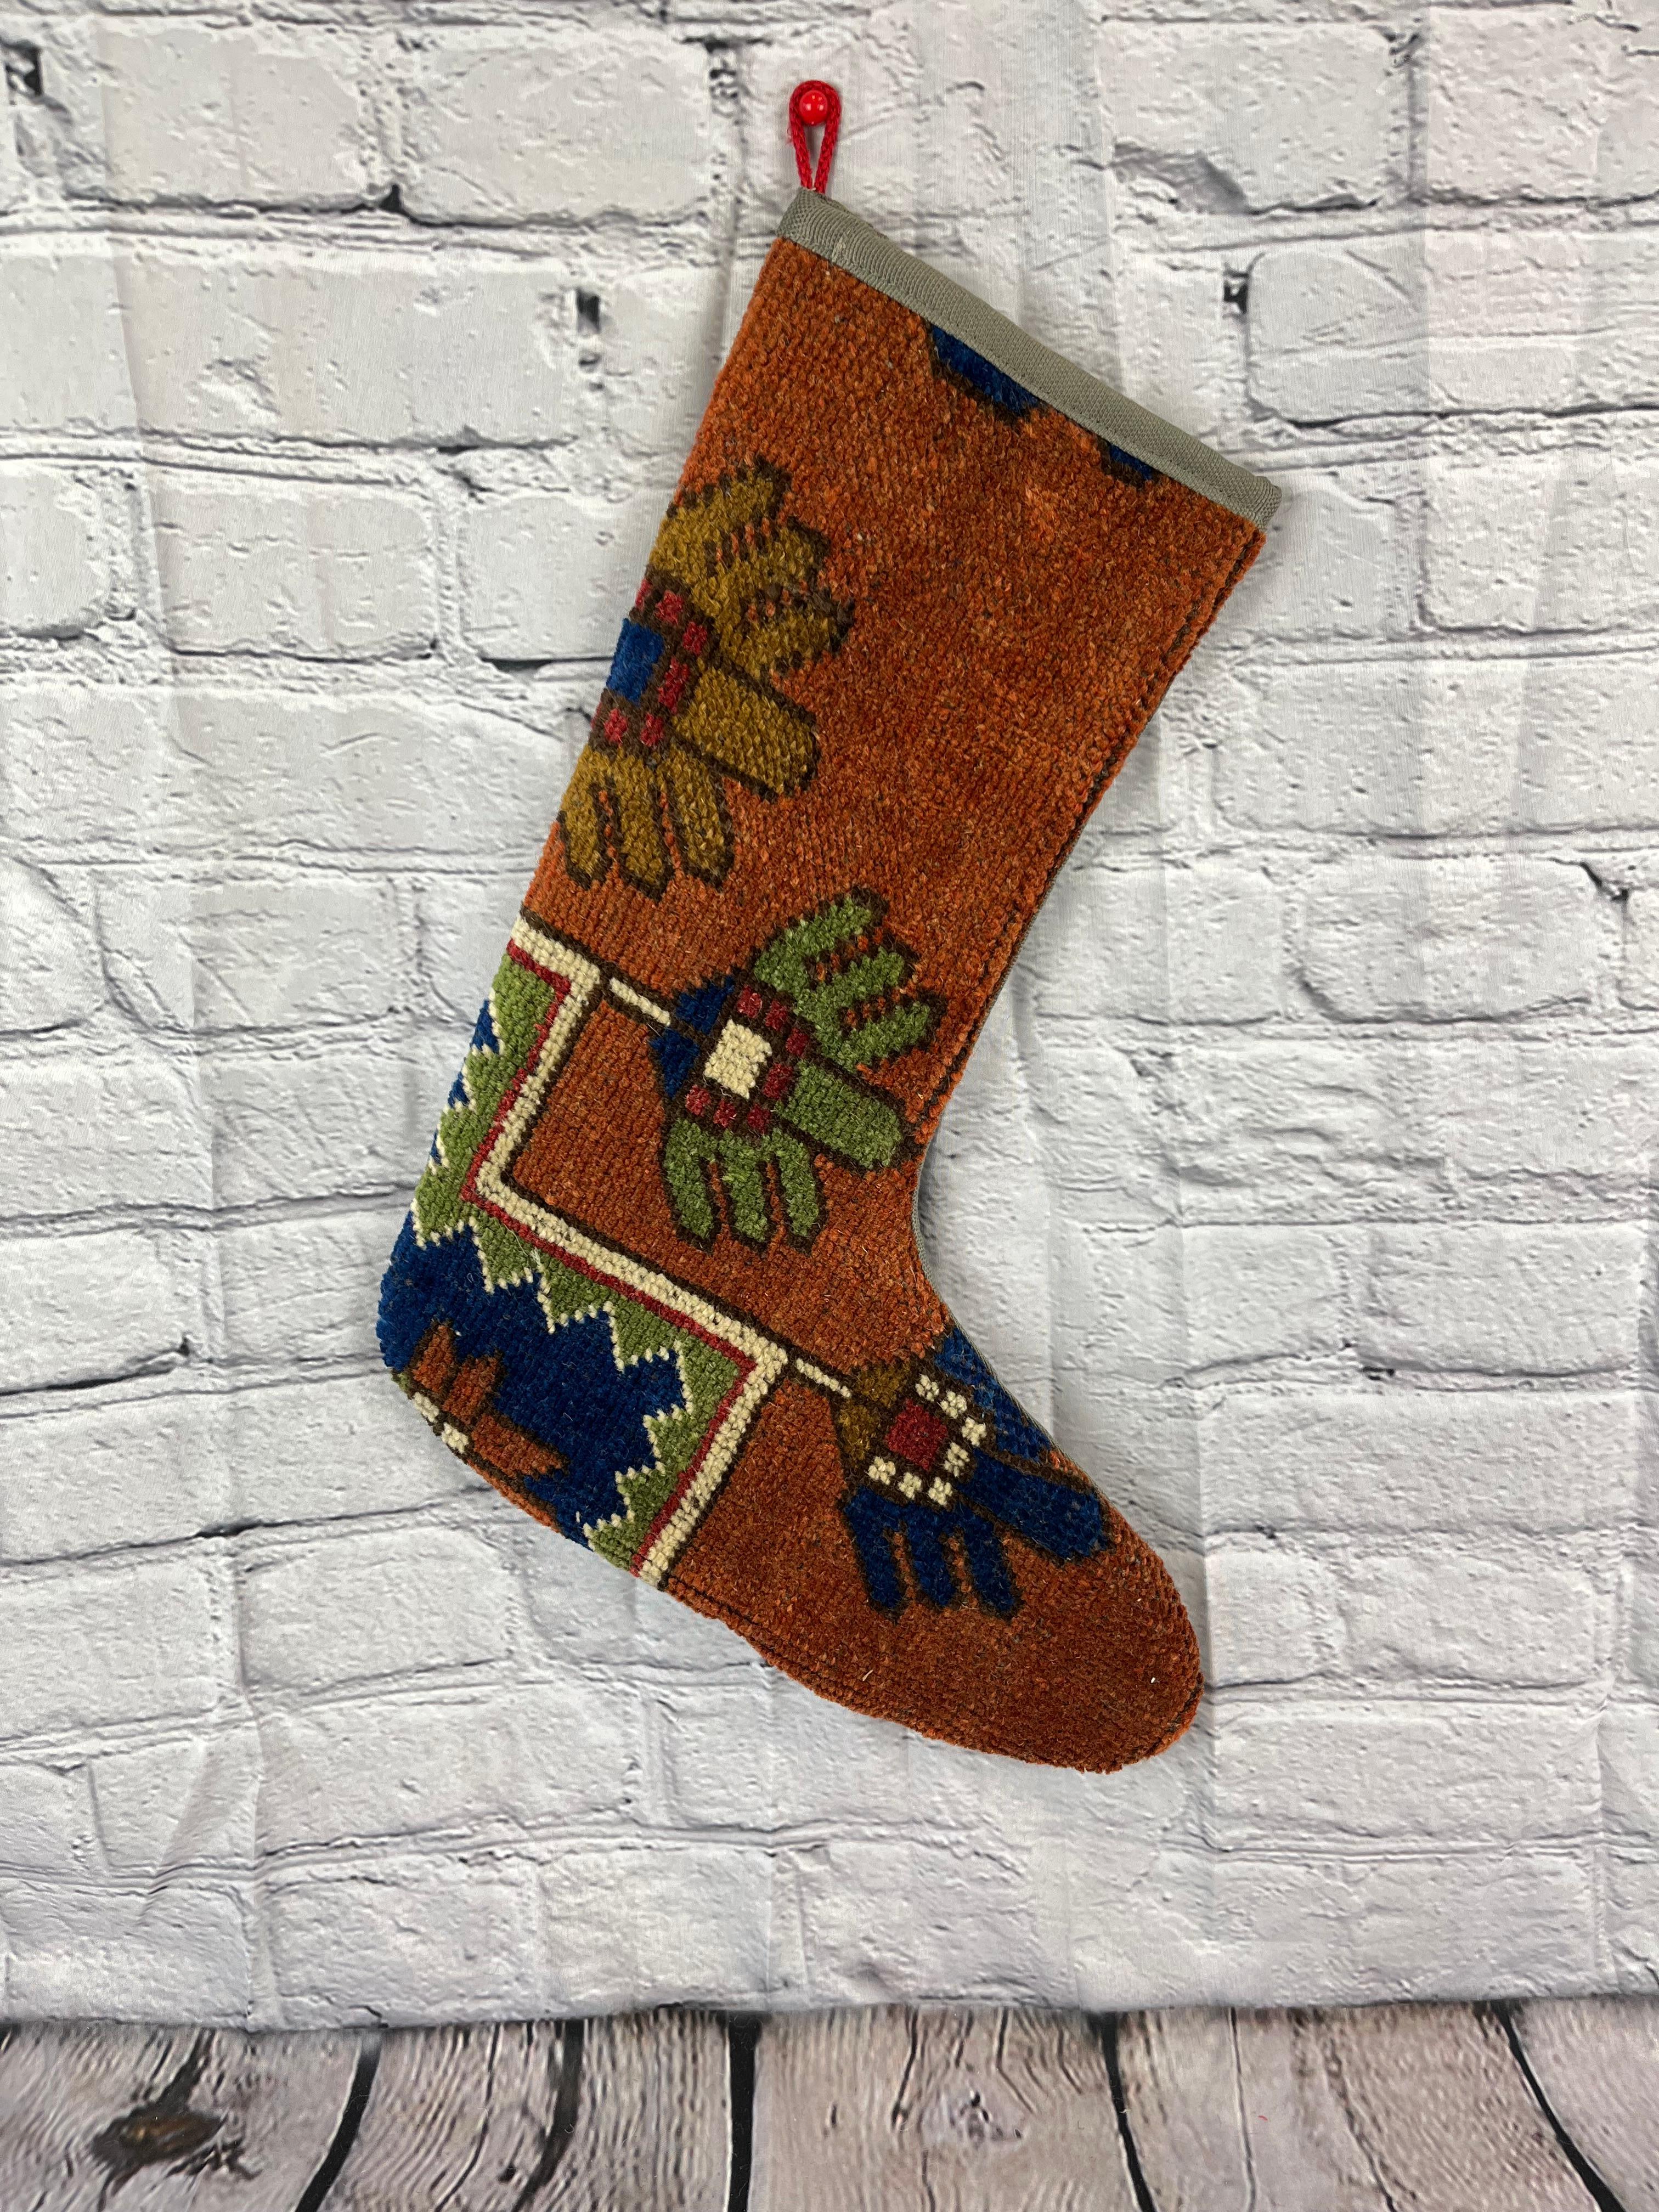 Handgefertigt
Vintage By aus den 1960er Jahren
MATERIALIEN: Wolle, Baumwolle

Nachhaltiger, upgecycelter Weihnachtsstrumpf aus türkischen Teppichen, hergestellt aus handgewebten Teppichfragmenten. 
Breite: 13 Zoll
Höhe: 17